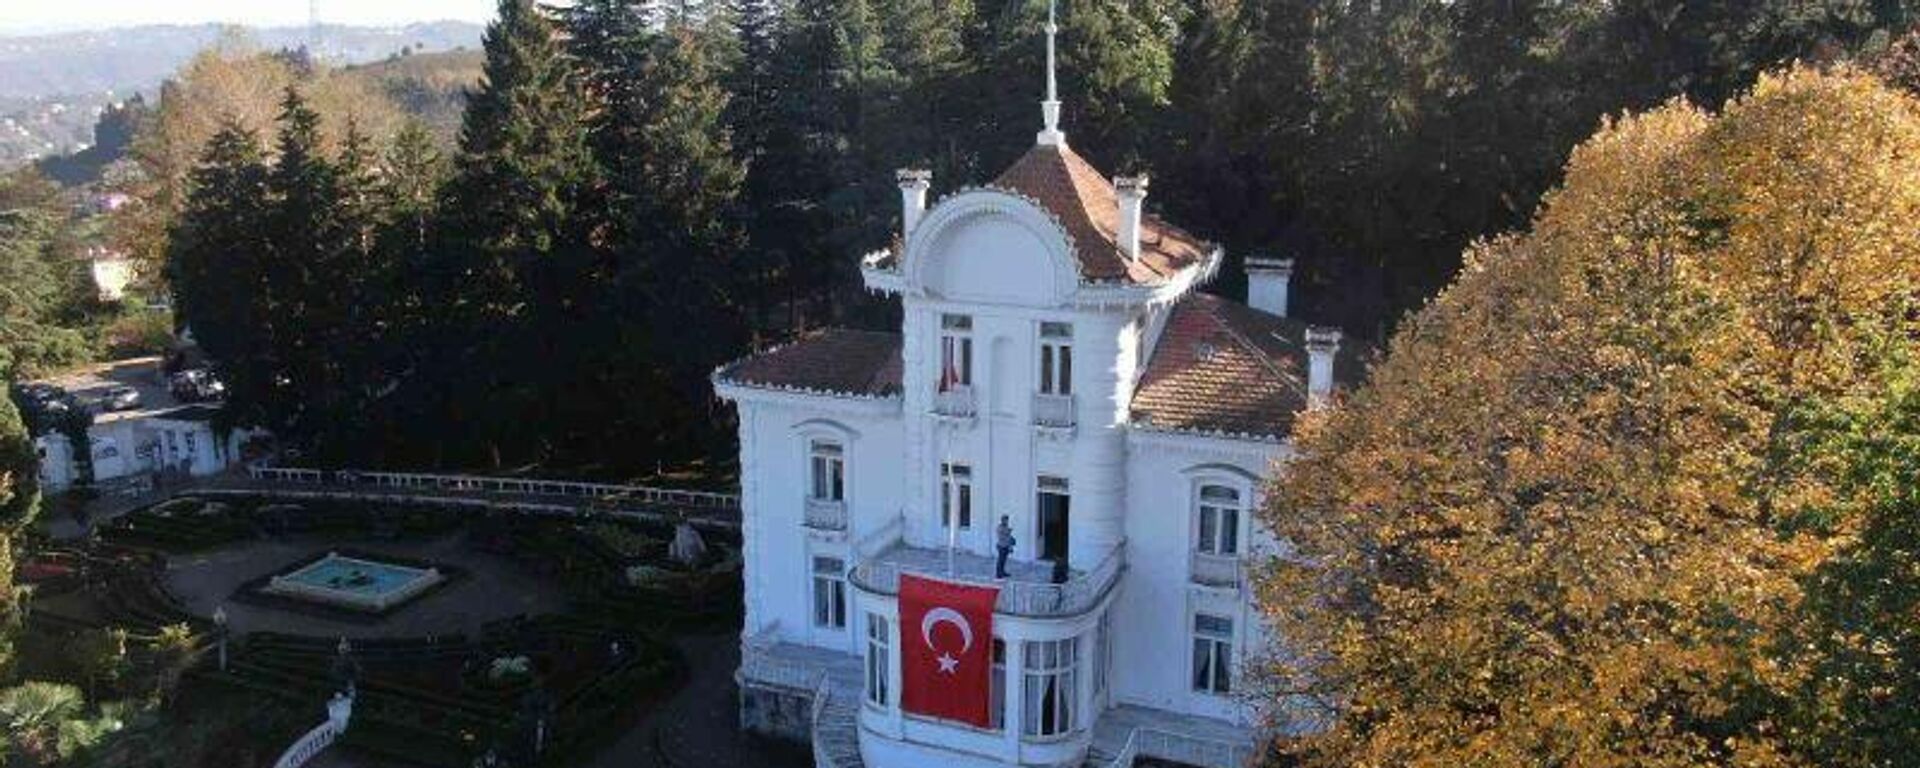 Atatürk Köşkü, Trabzon - Sputnik Türkiye, 1920, 08.11.2021